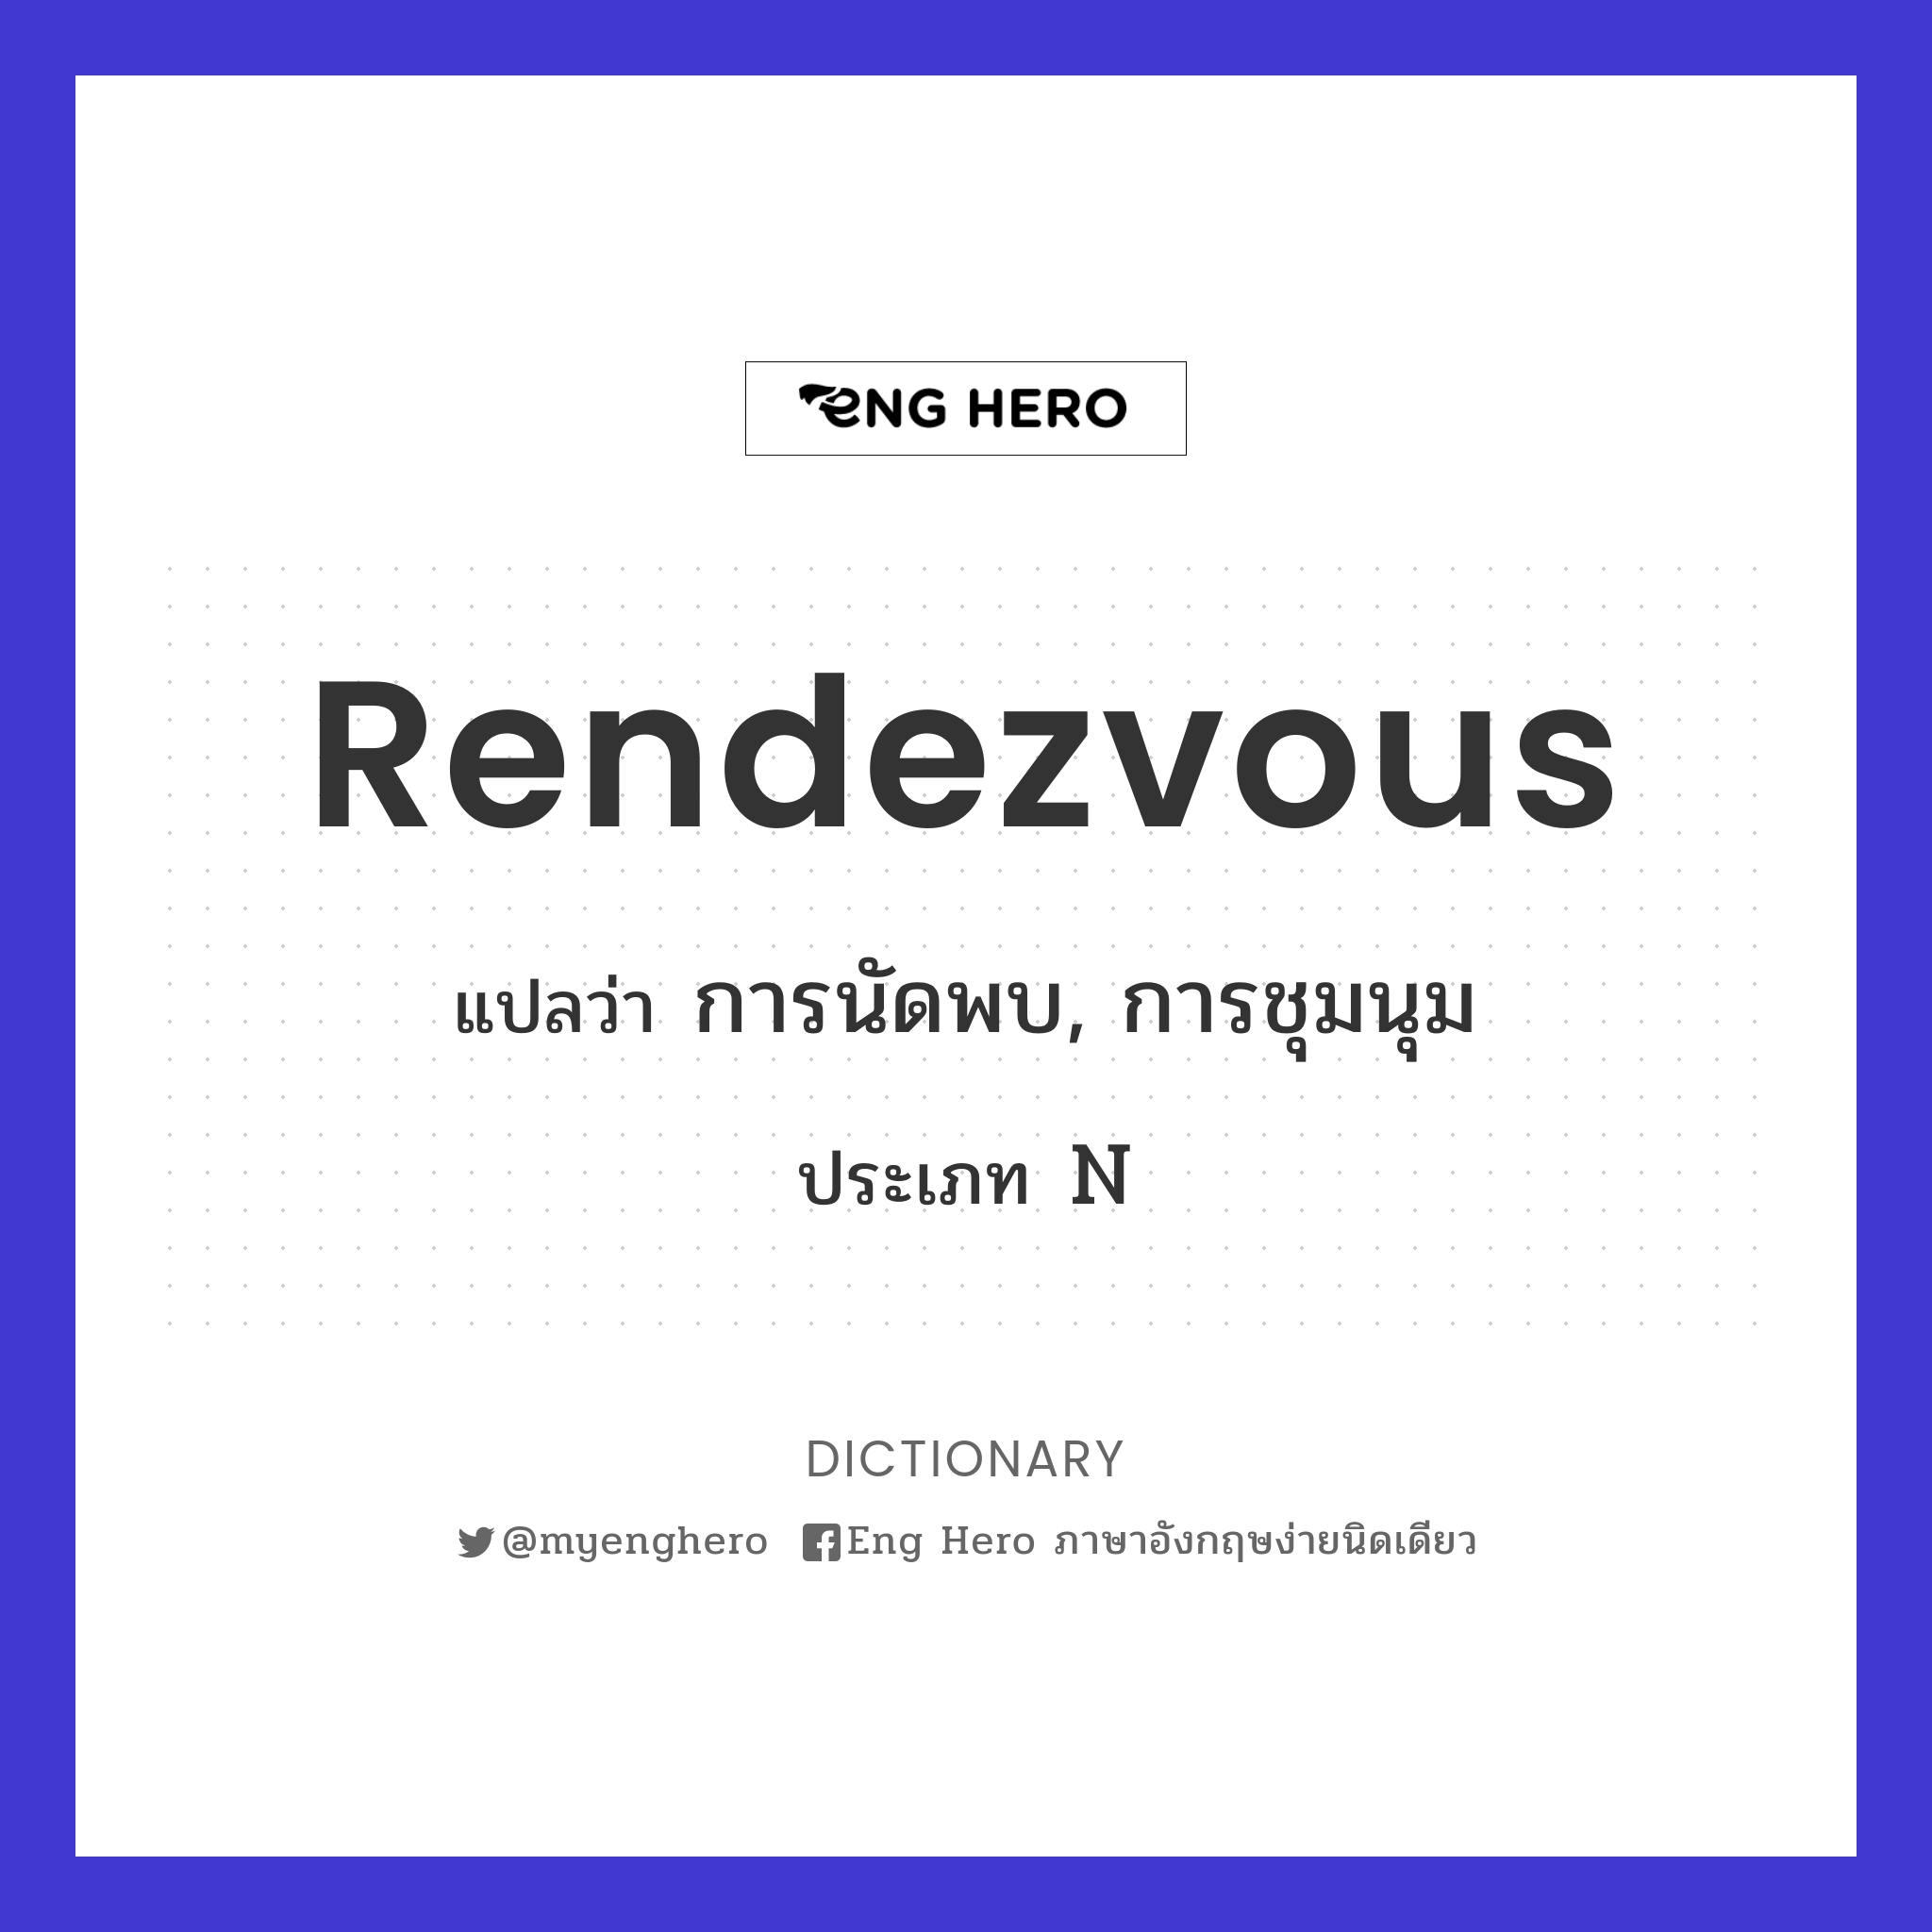 rendezvous